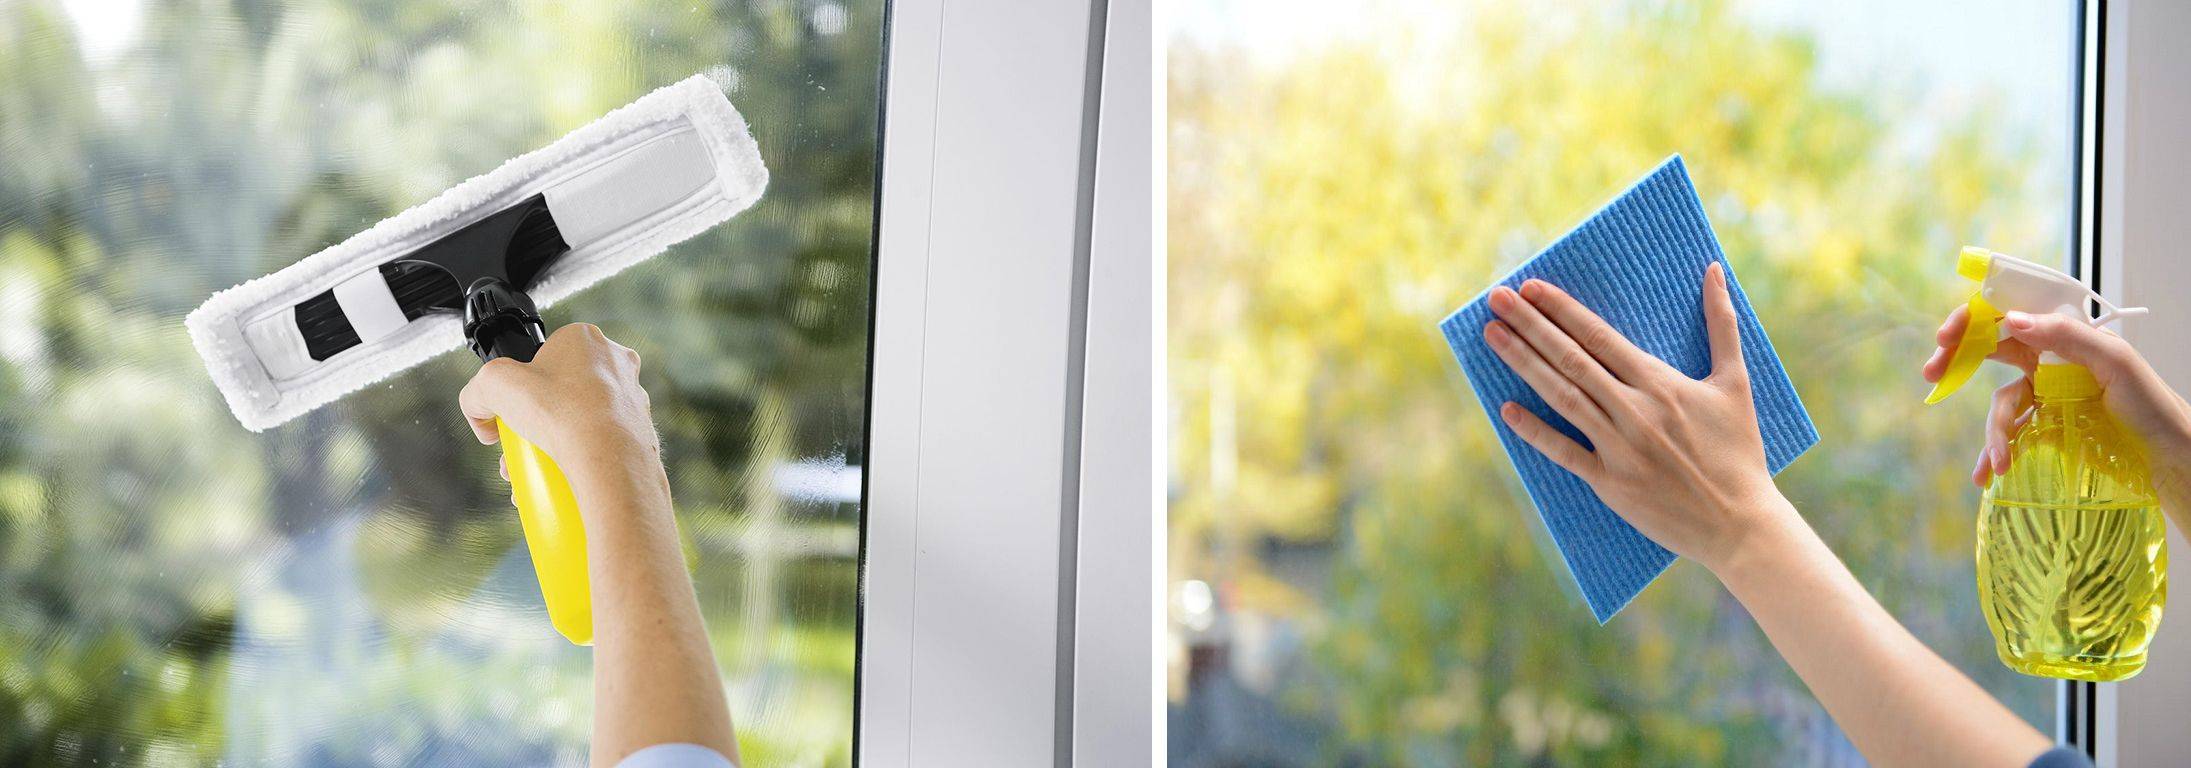 Как мыть окна без разводов правильно и быстро в домашних условиях, чем лучше